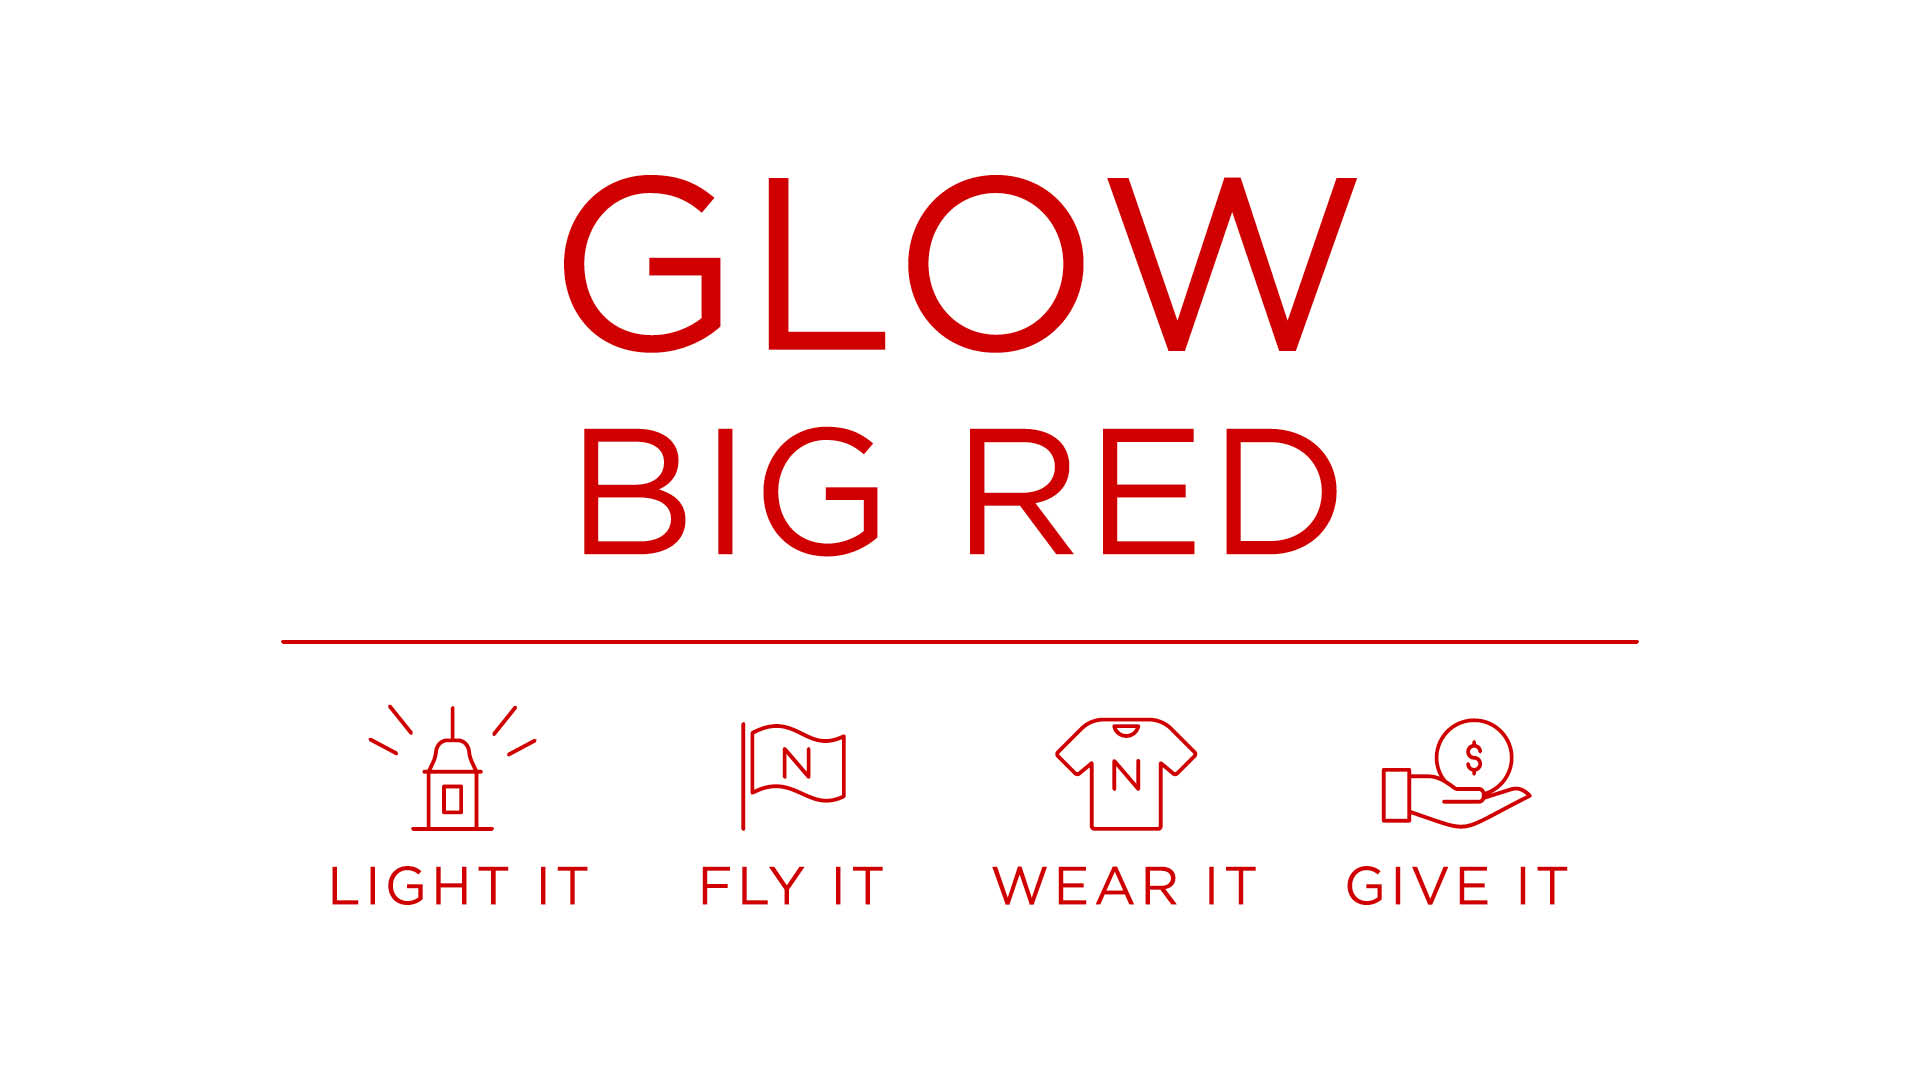 Glow Big Red if Feb. 14.